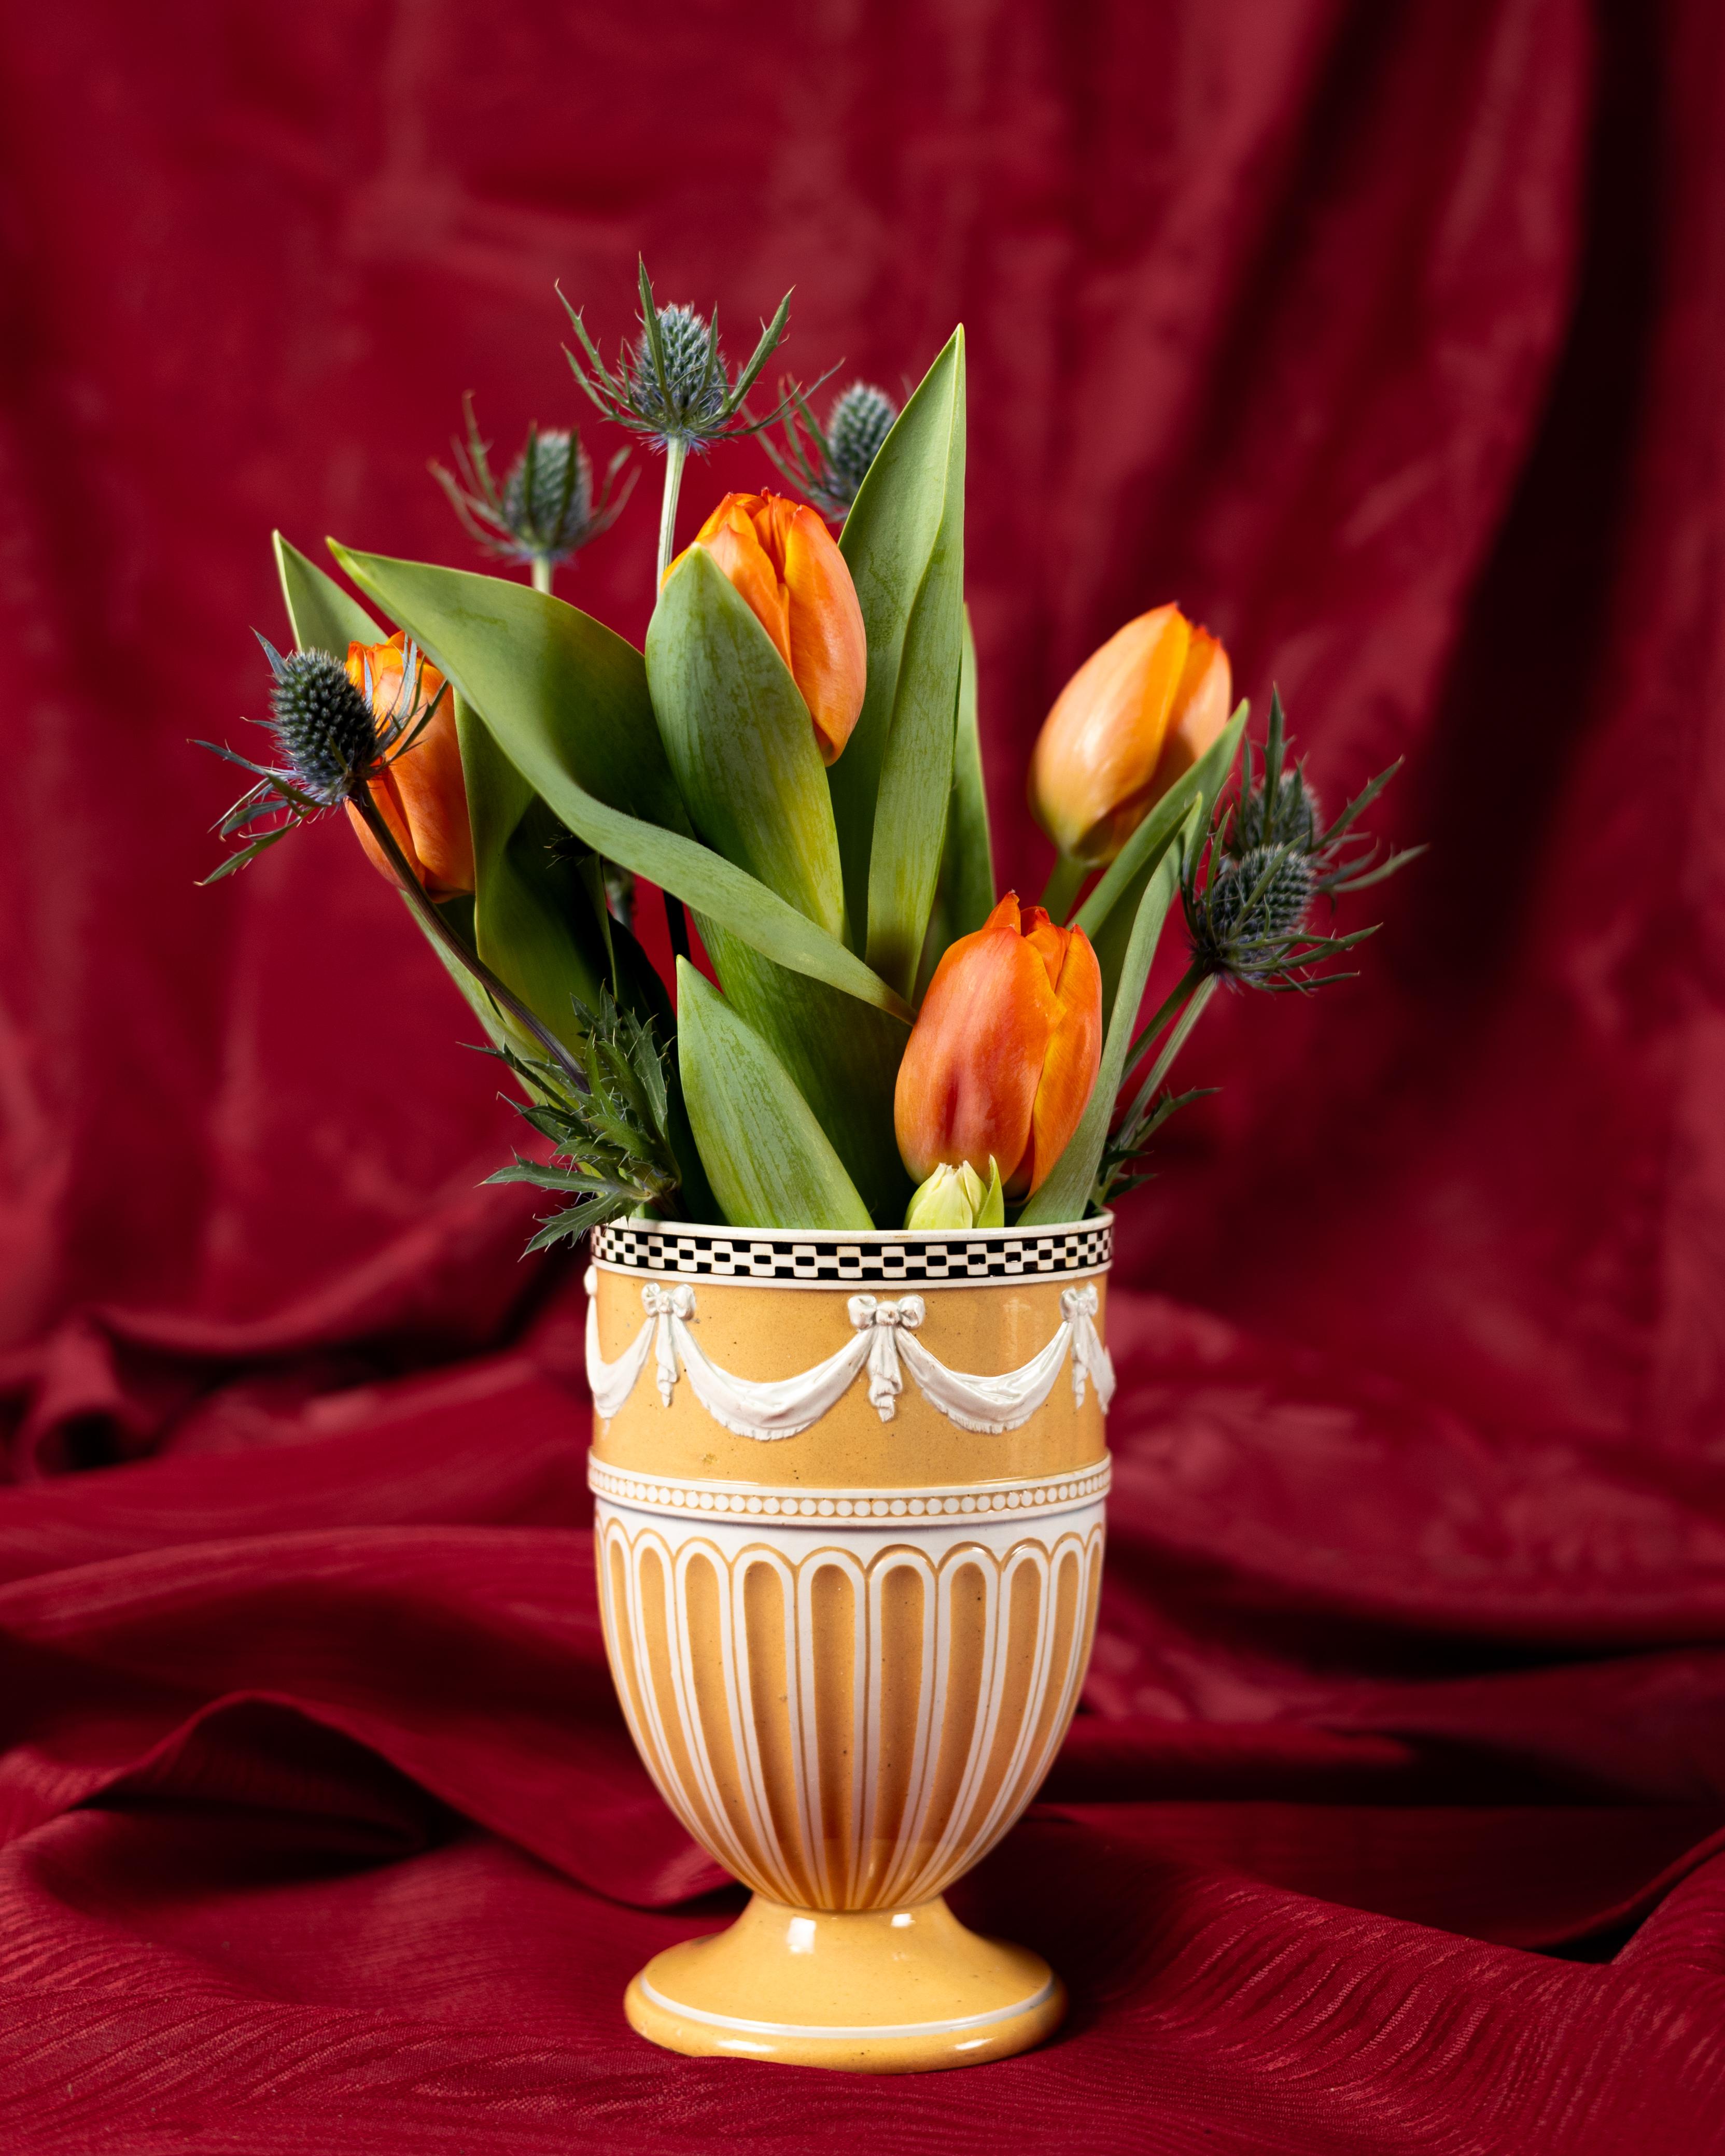 Ce vase du début du XIXe siècle décoré à l'engobe de Wedgwood présente un design élégant.
Il est décoré à l'extérieur d'un engobe de couleur ocre et présente des colonnes cannelées blanches non peintes qui s'élèvent jusqu'à une bande de 